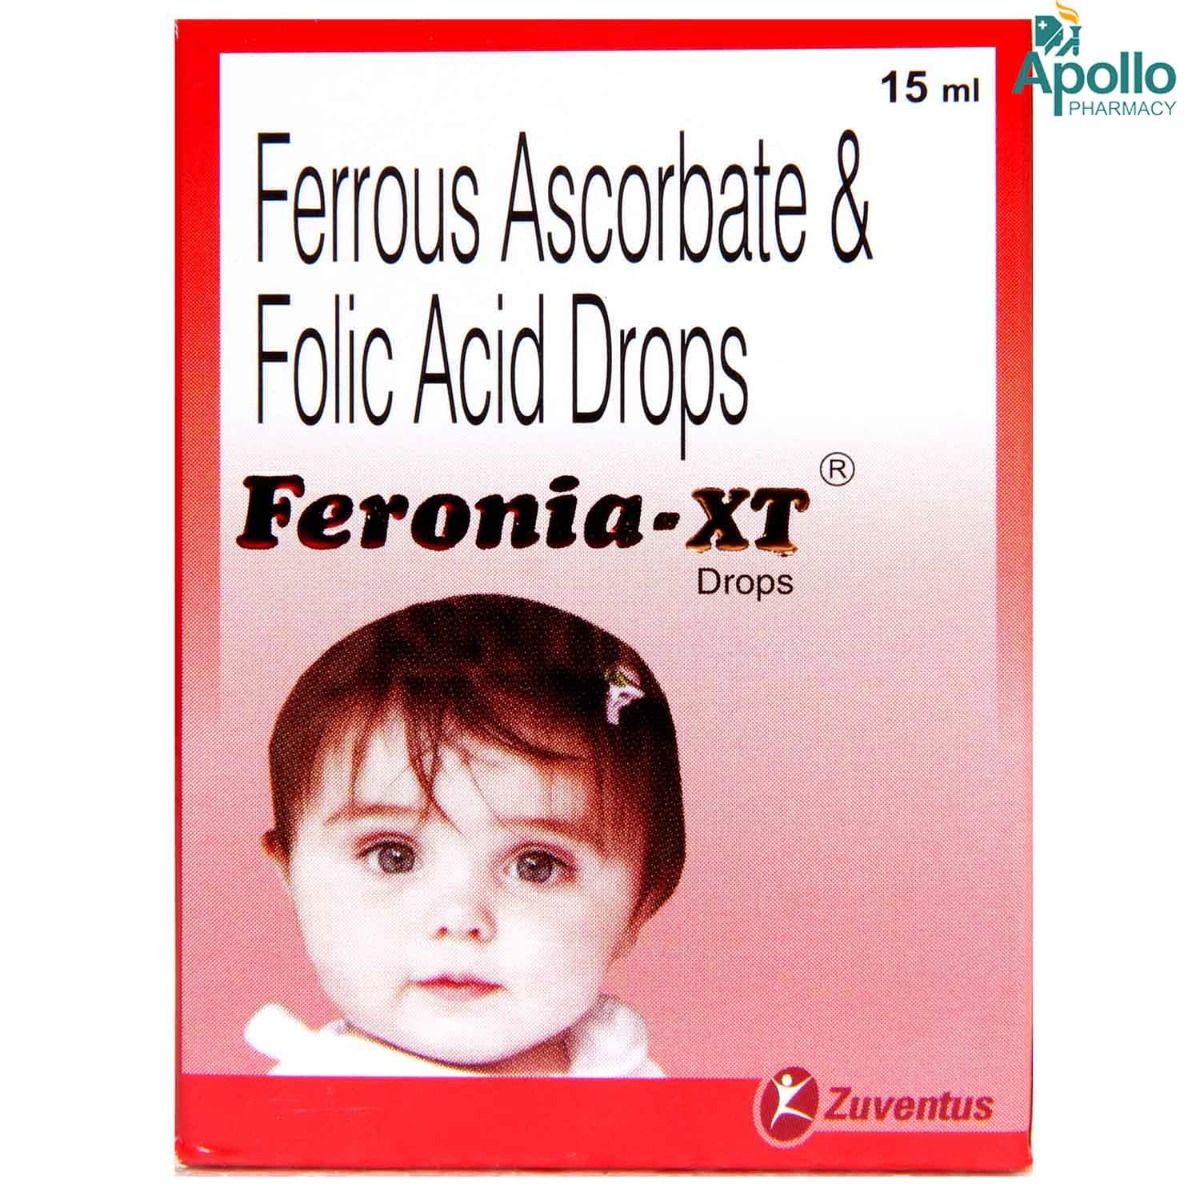 Buy Feronia-XT Drops 15 ml Online